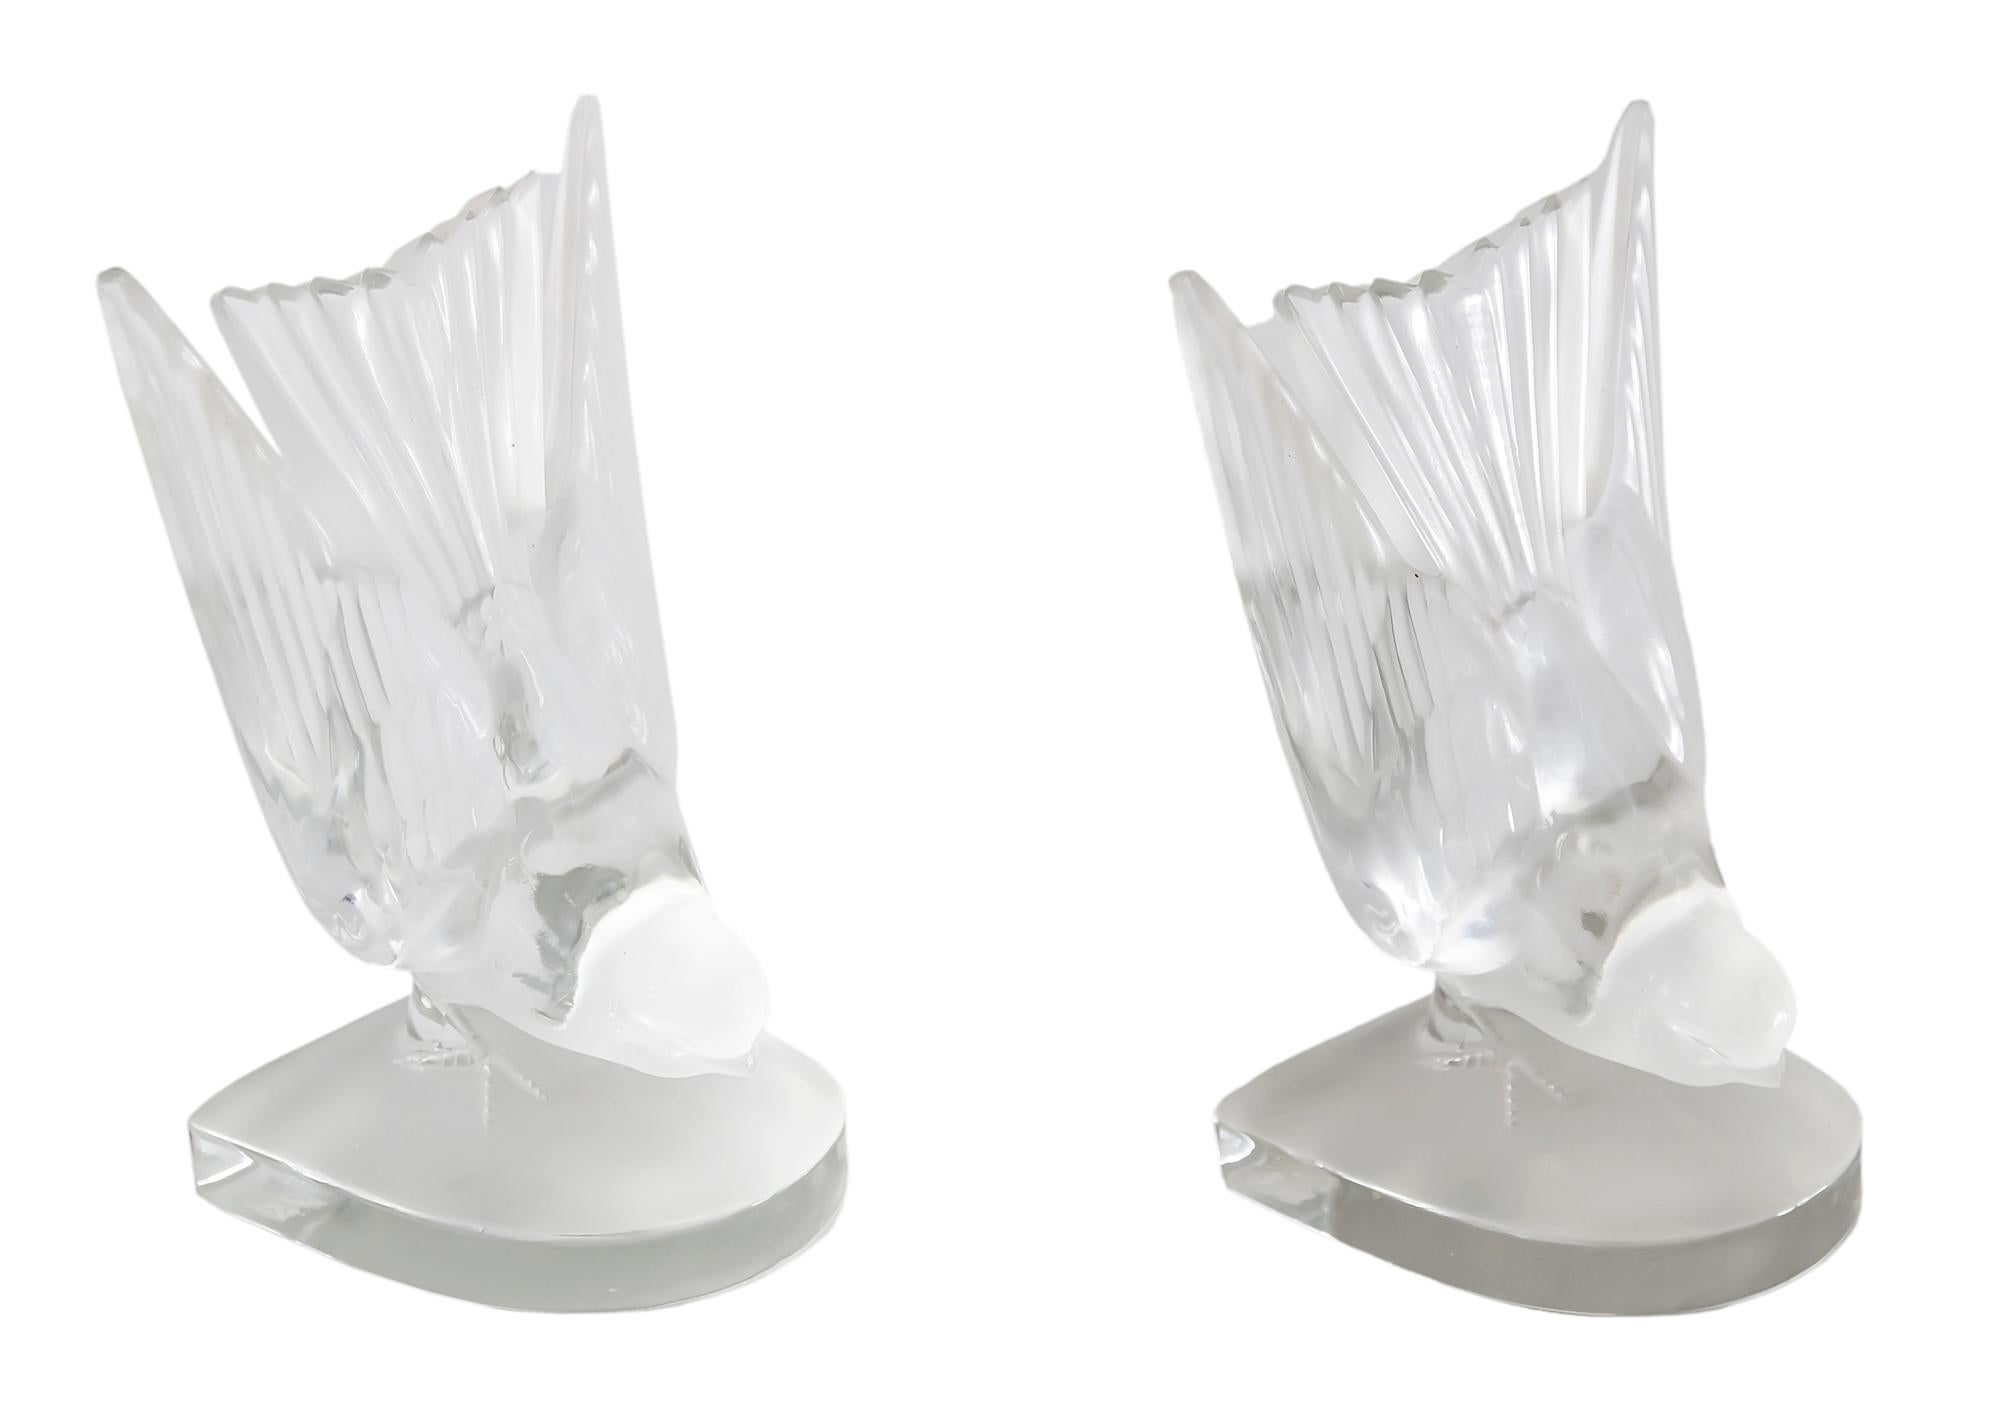 Sculptures d'oiseaux en cristal Lalique français pour porte-livre ou presse-papier.
Le verre est givré et clair.
Signé sur la base.